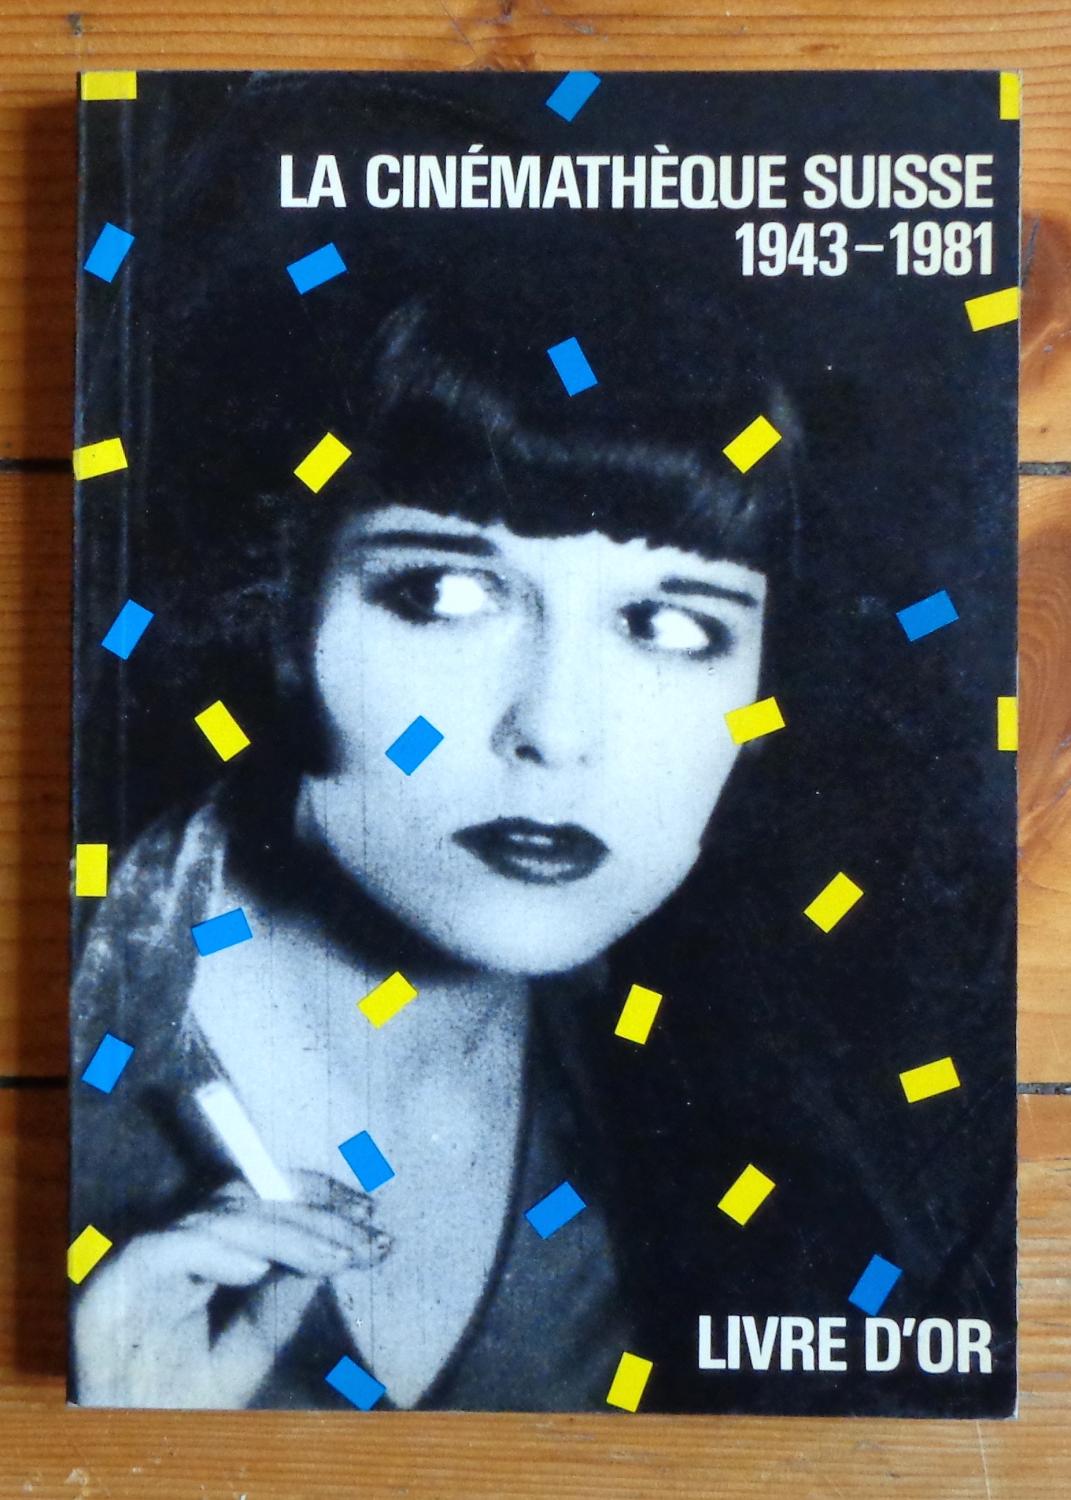 Livre d'or de la cinémathèque suisse 1943-1981 by Freddy Buache et al ...